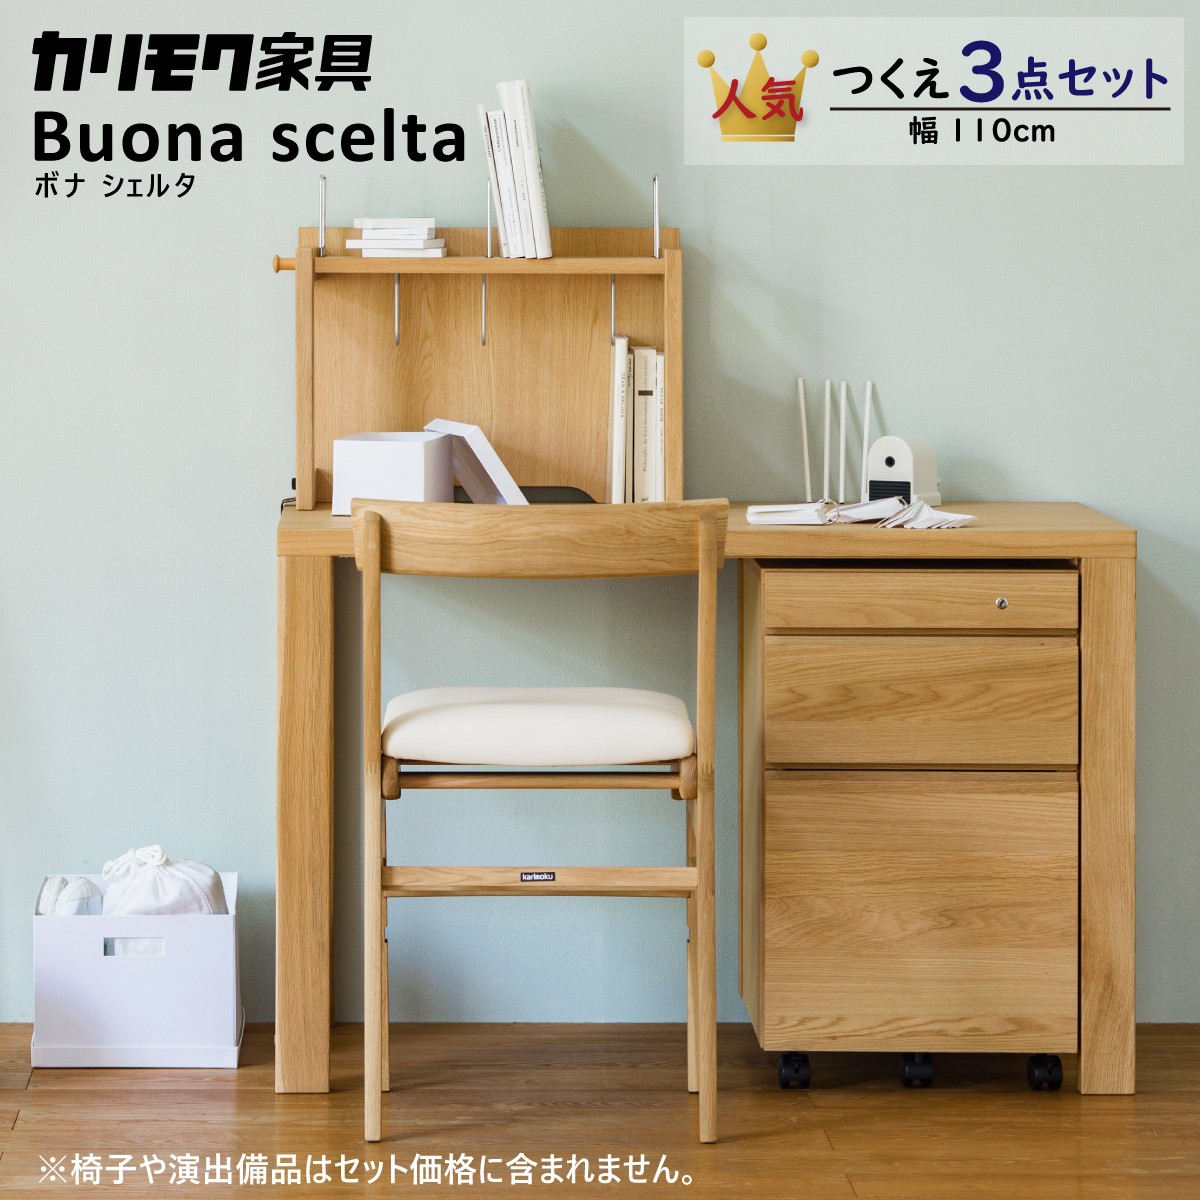 日本特売シナプン様専用学習机 ワゴン 椅子 ボナシェルタ3点セット 事務机・学習机